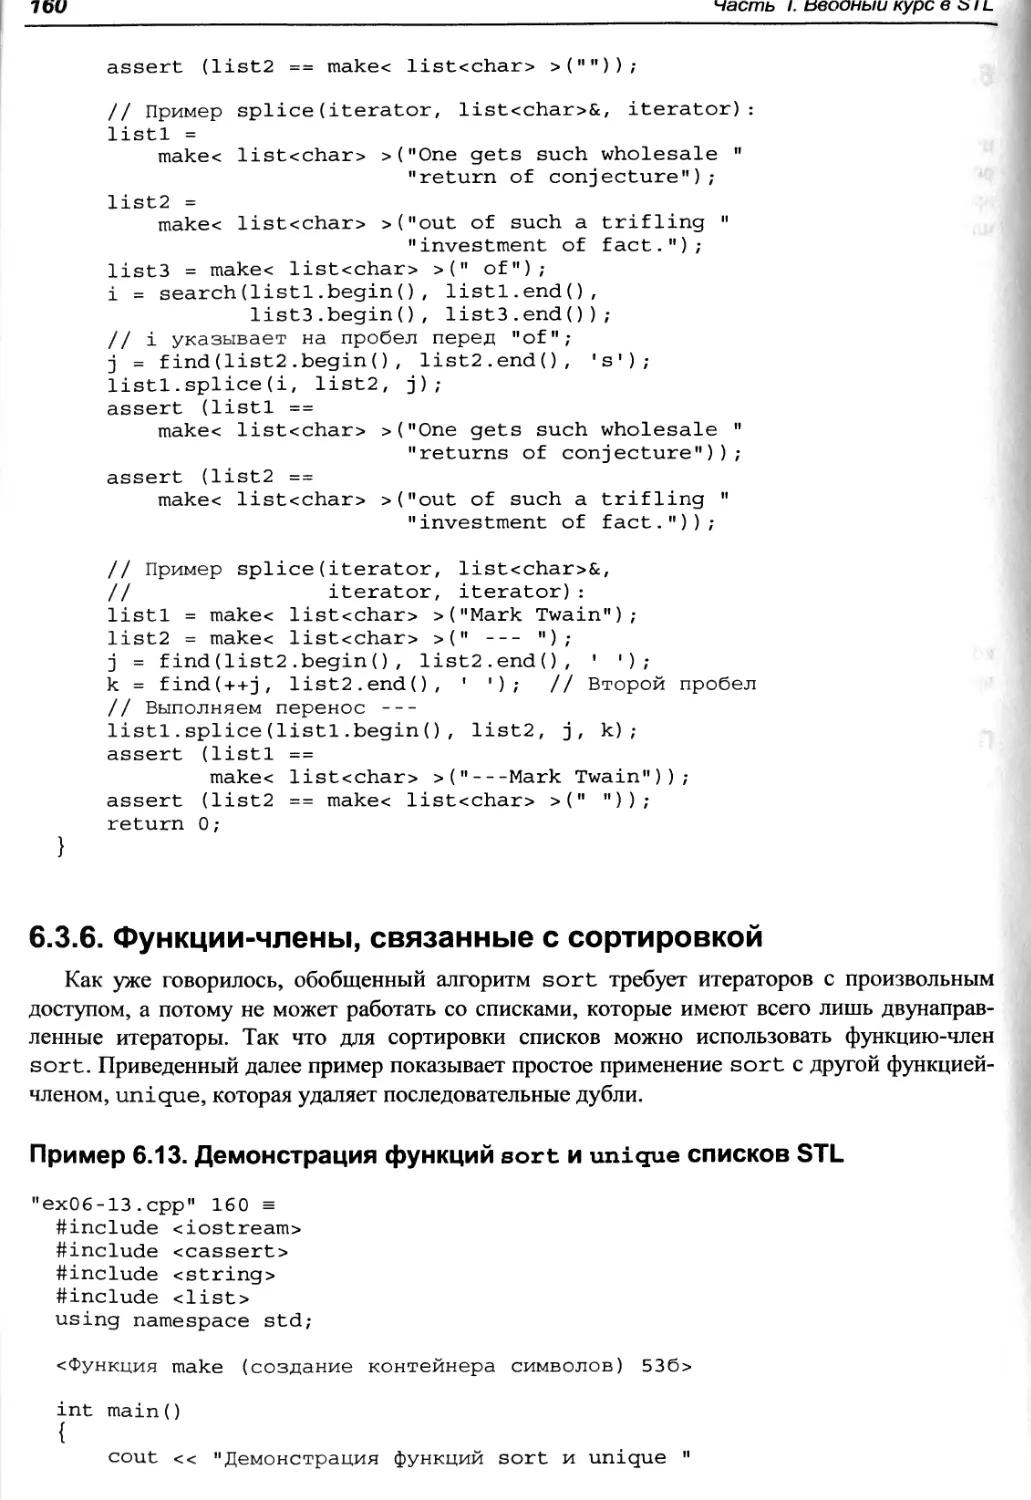 Пример 6.13. Демонстрация функций sort и unique списков STL
6.3.6. Функции-члены, связанные с сортировкой